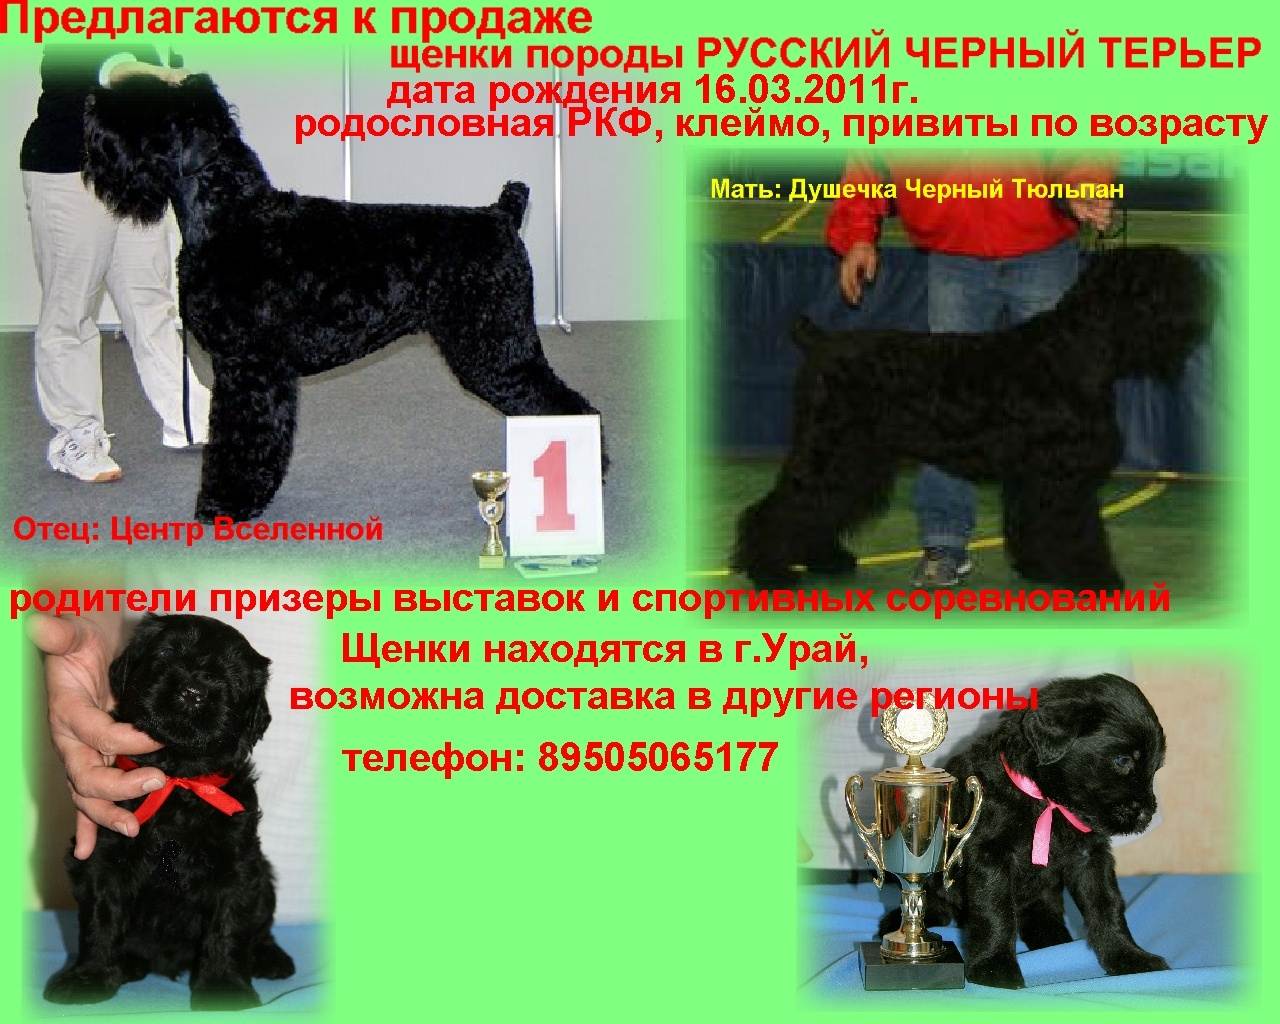 Порода собак русский черный терьер и ее характеристики с фото